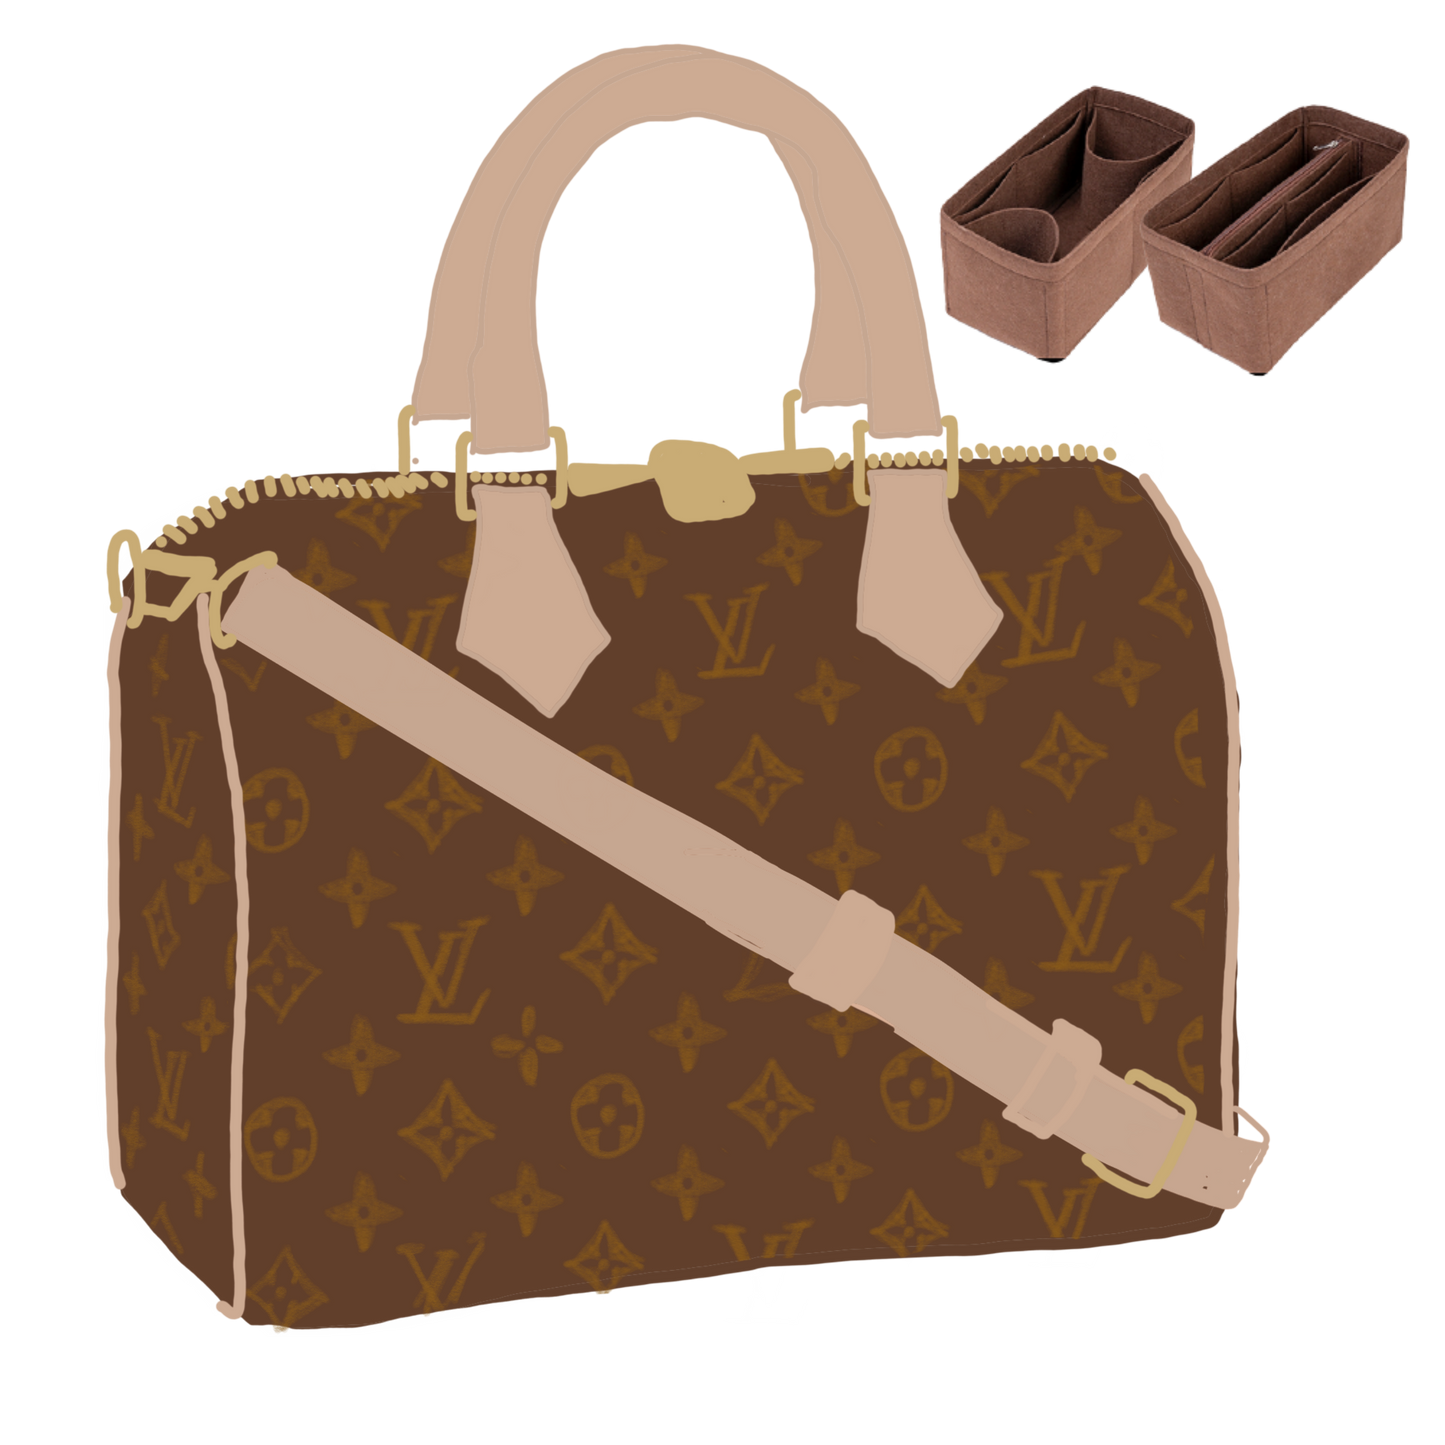 Louis Vuitton Speedy Handbag Organizer and Structural Support. – ByAsteria